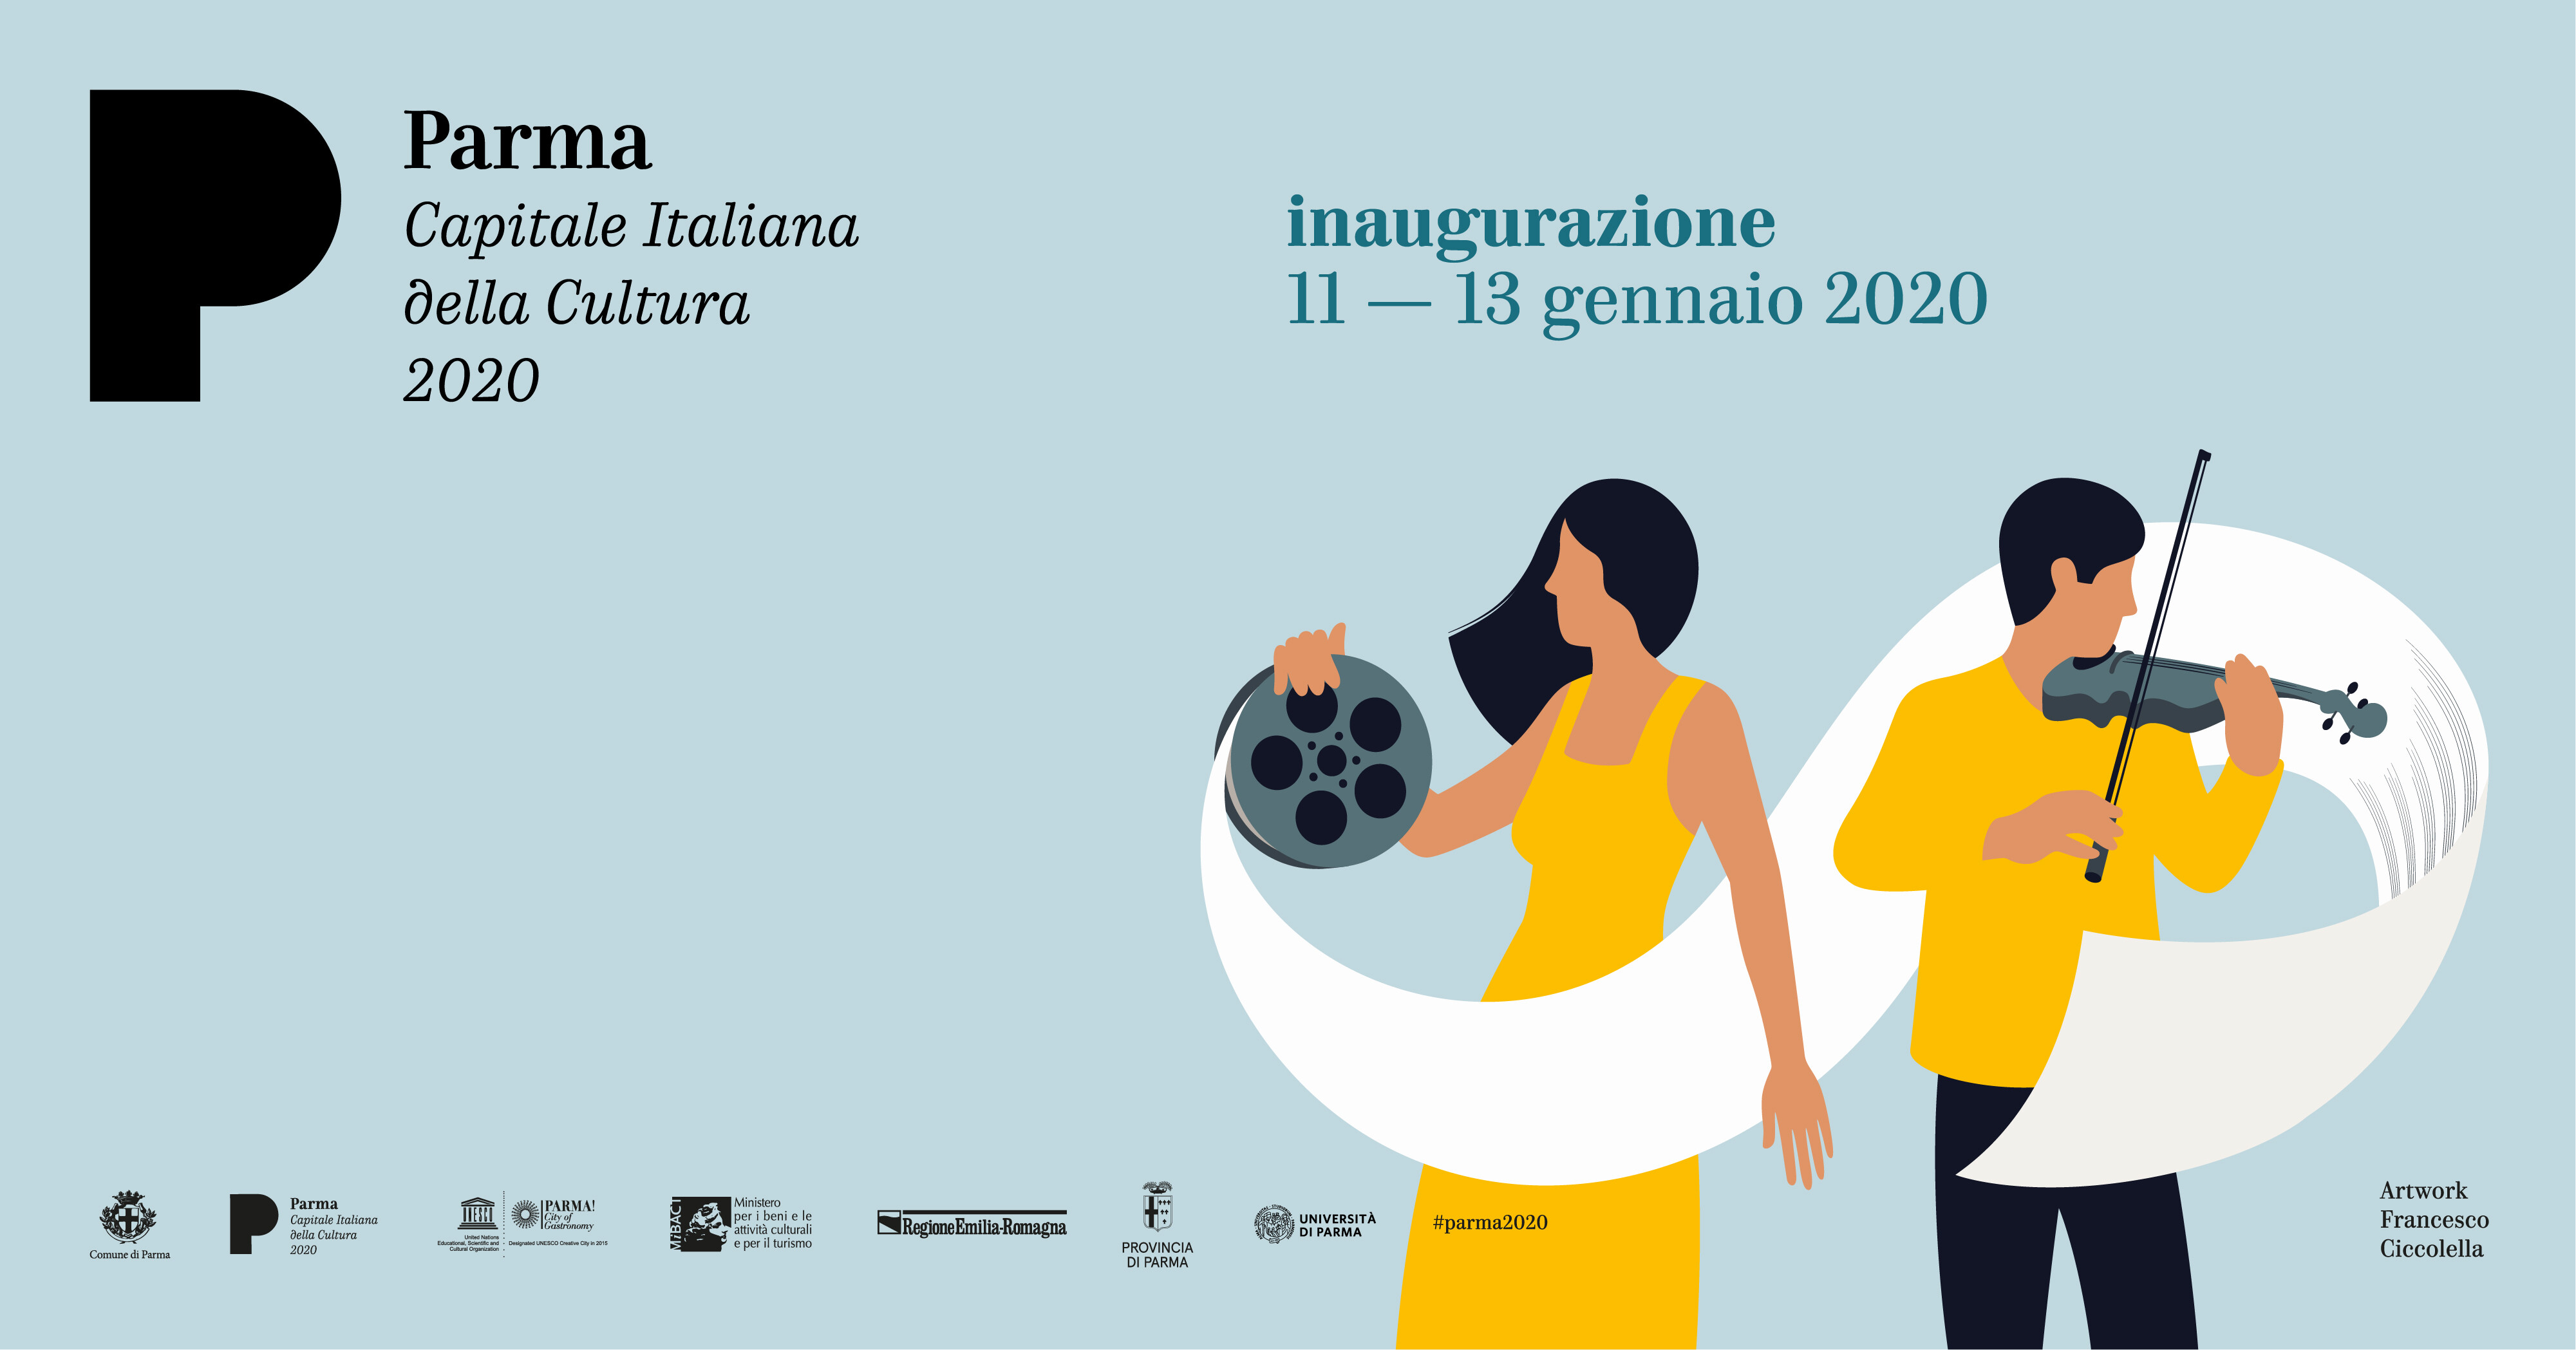 Parma Capitale Italiana della Cultura 2020: programma completo  dei 3 giorni di inaugurazione